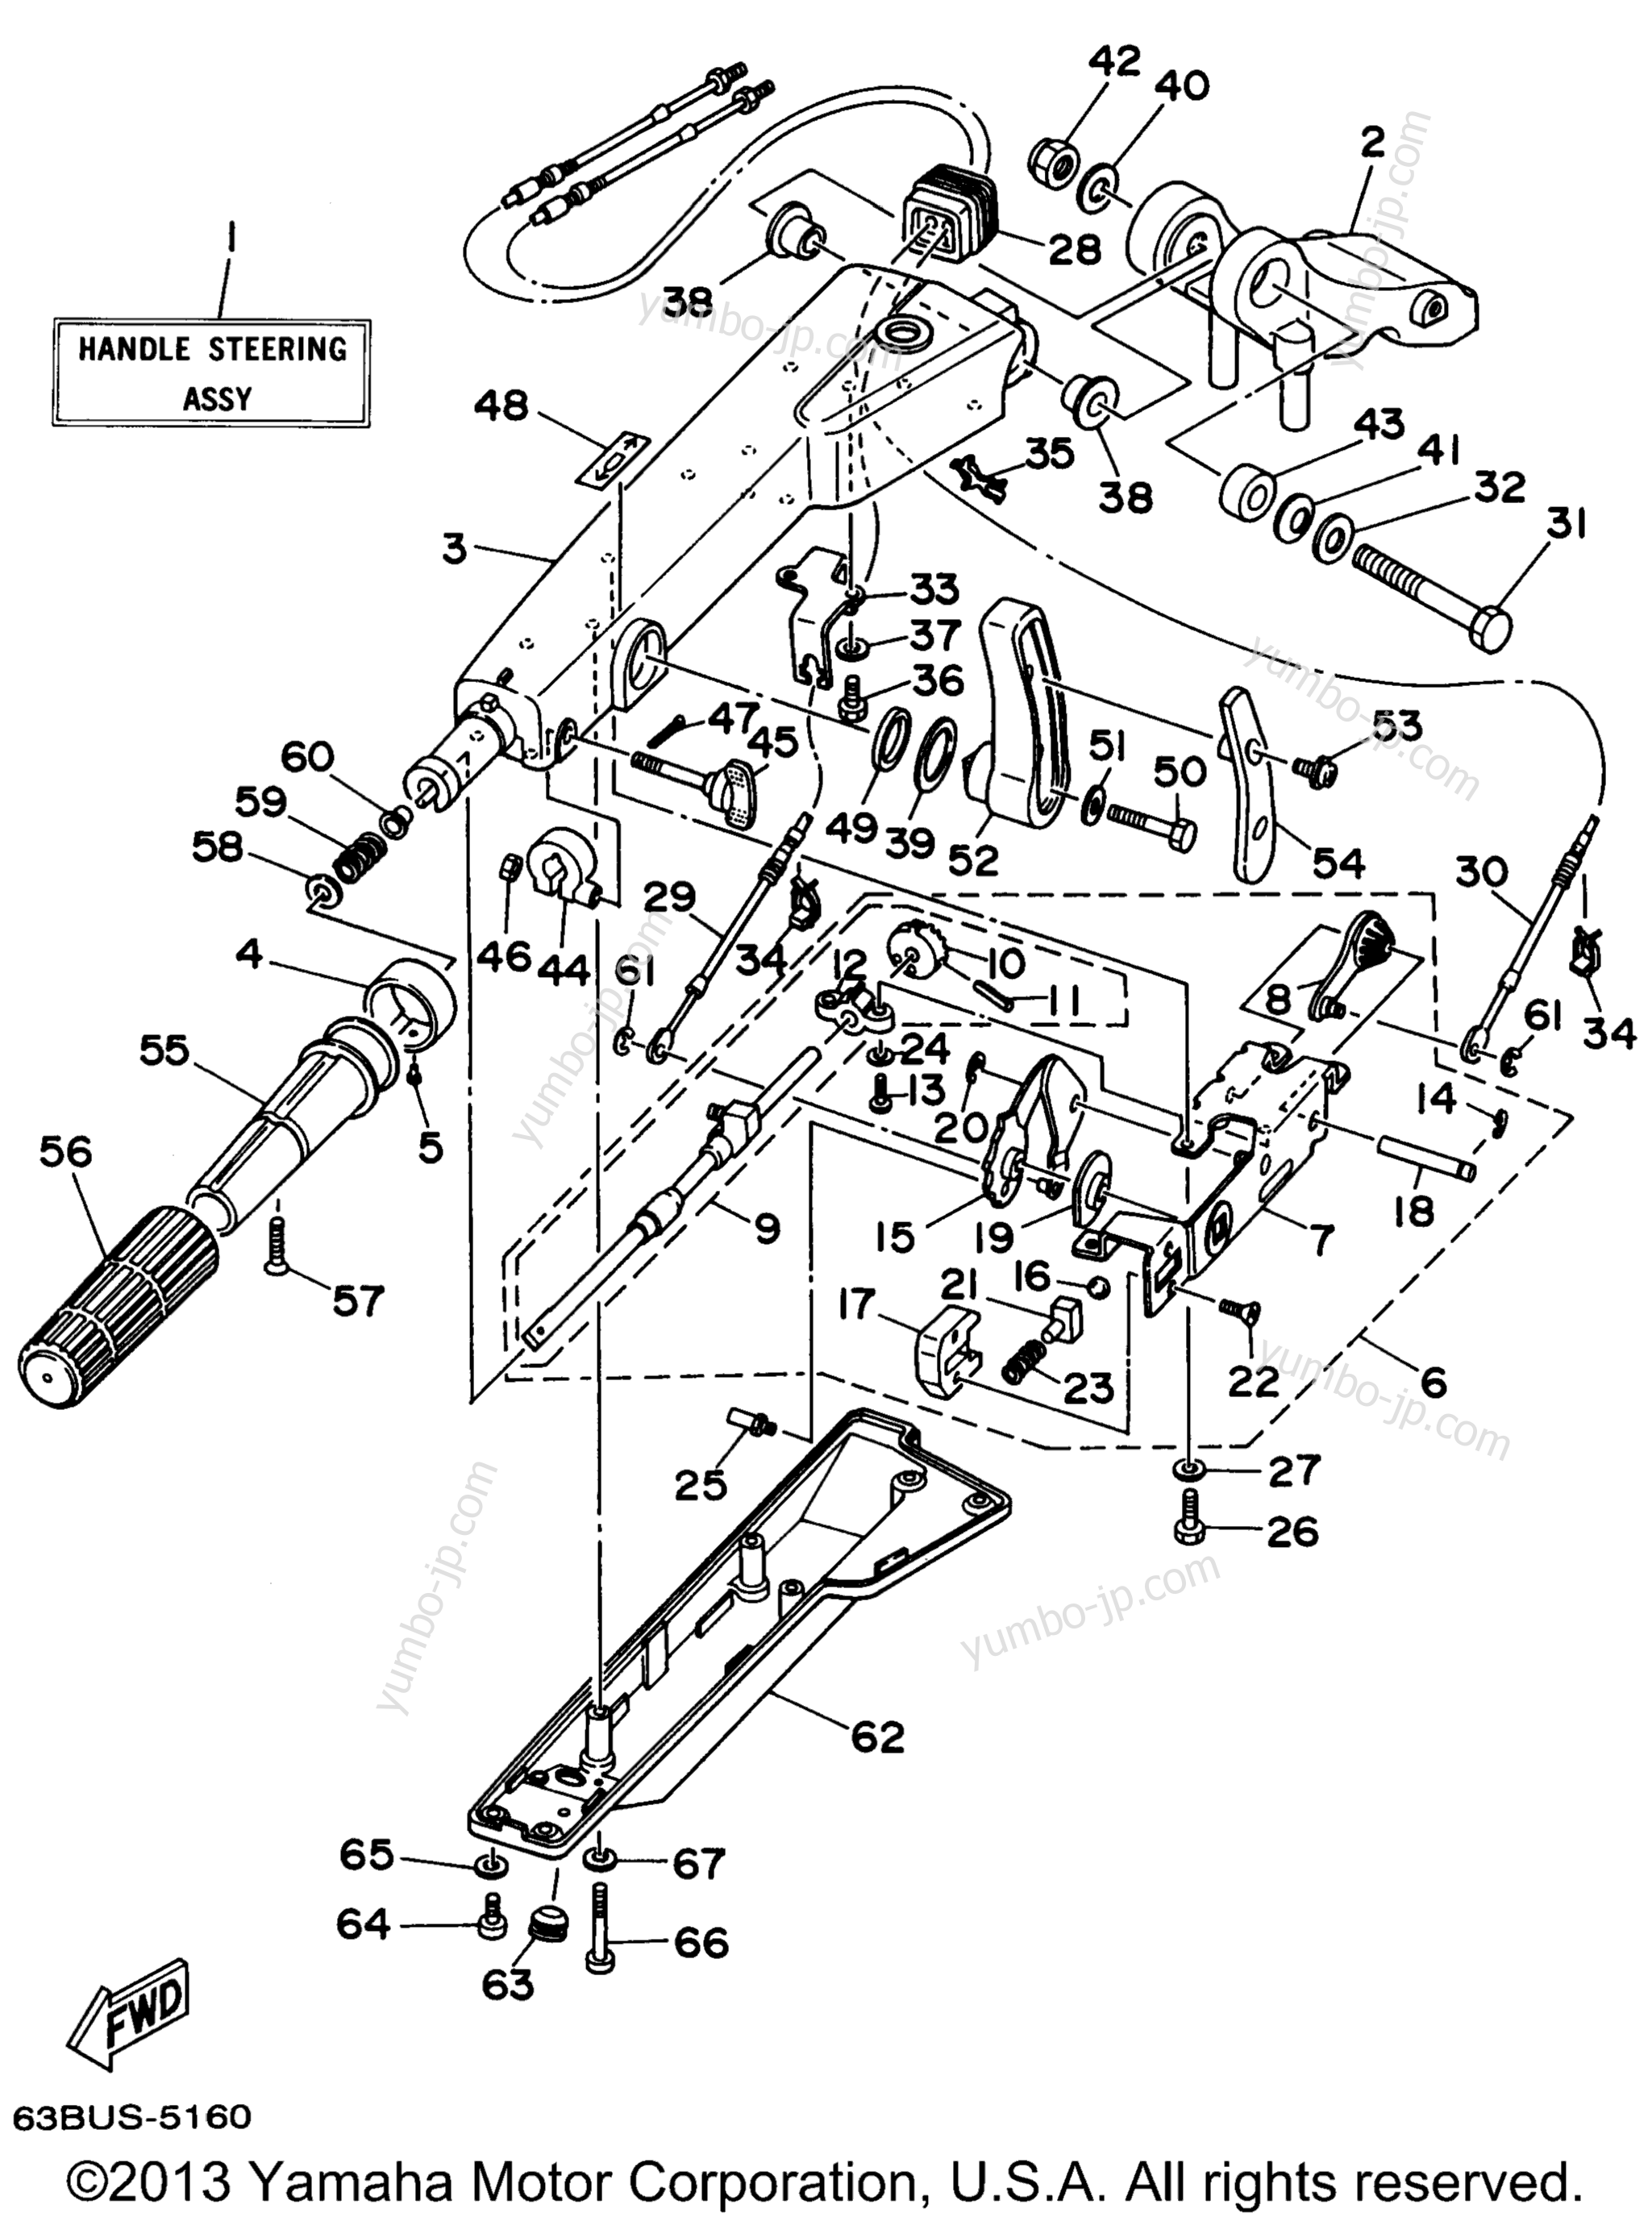 Steering для лодочных моторов YAMAHA 50EJRX (50EJRX) 1999 г.